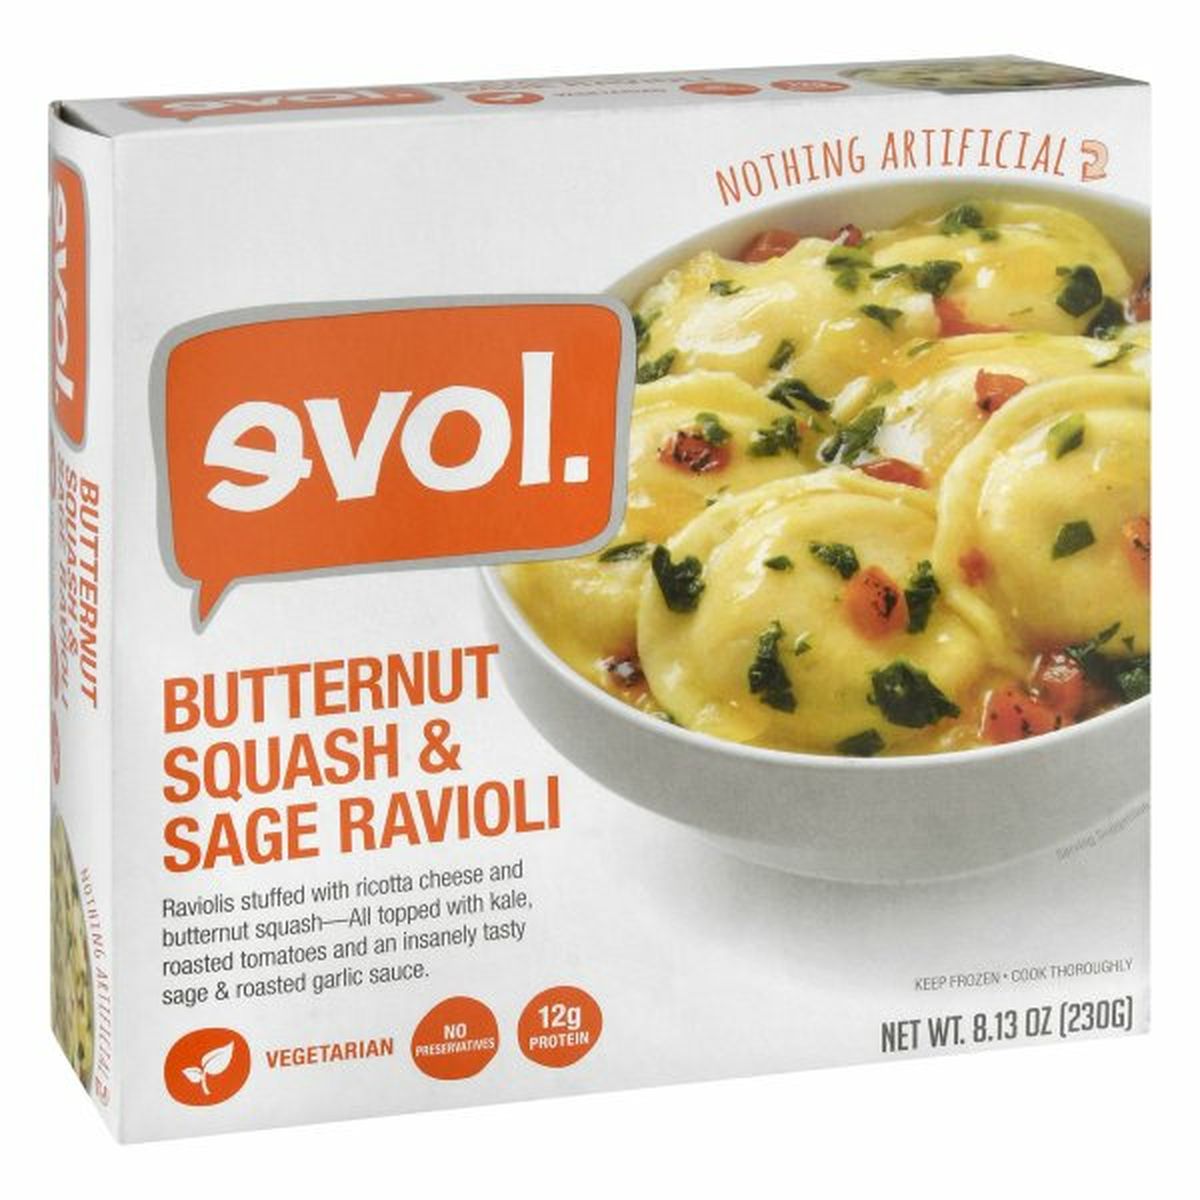 Calories in Evol Butternut Squash & Sage Ravioli